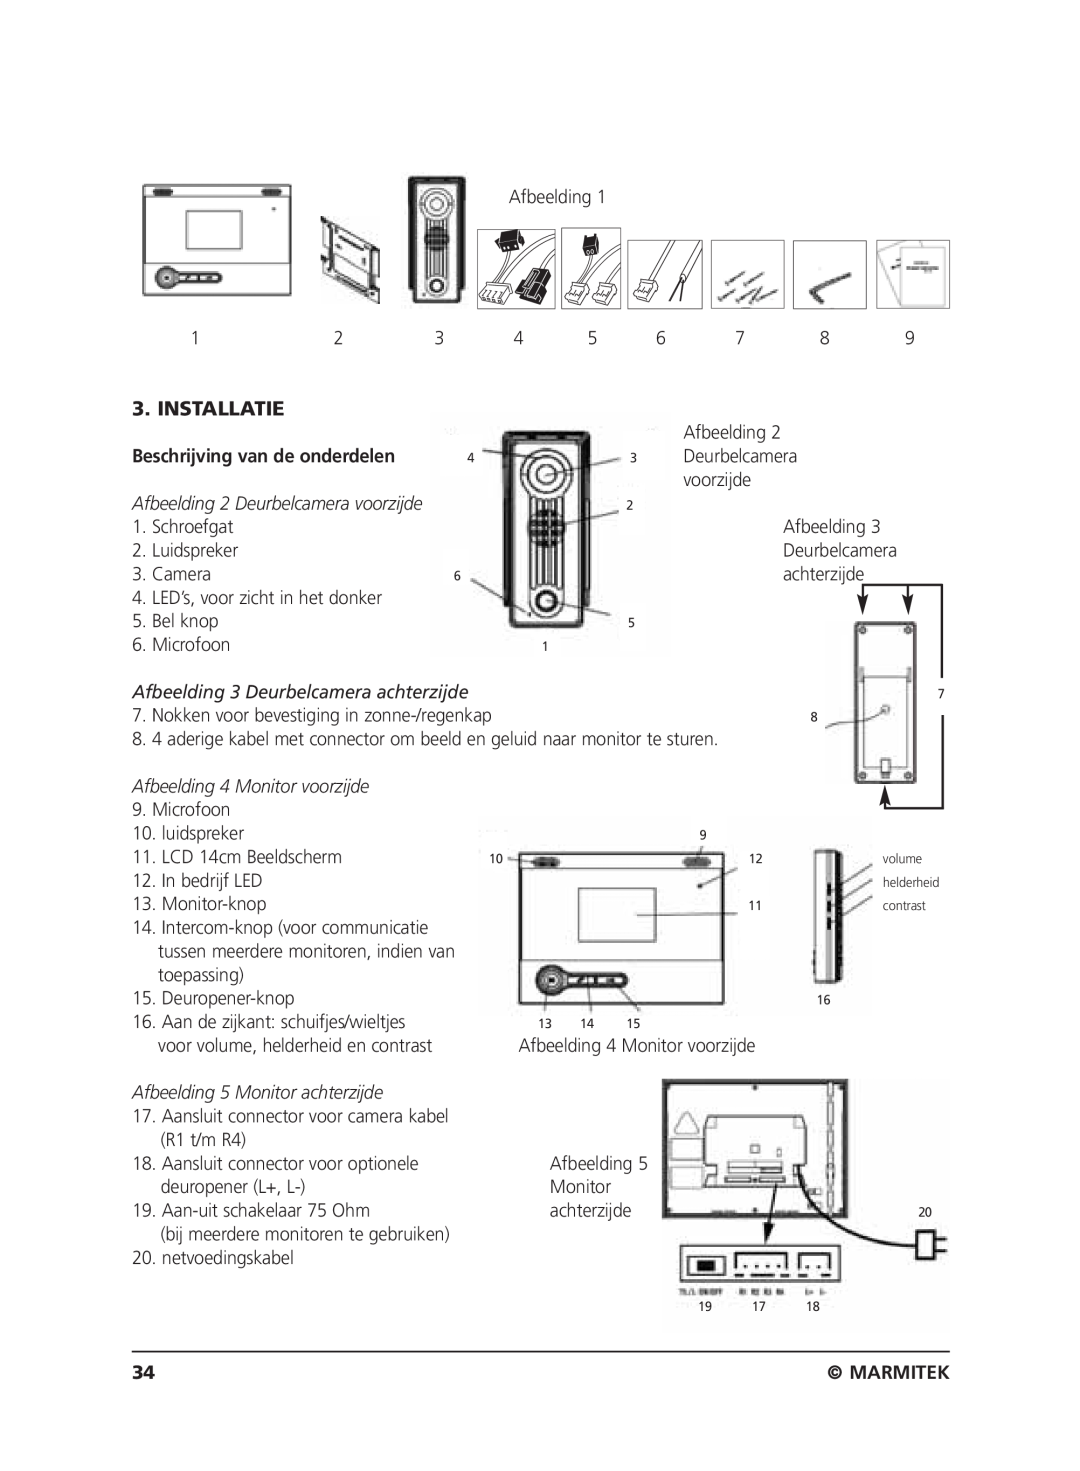 Marmitek VIDEO DOORPHONE user manual Installatie, Beschrijving van de onderdelen, Marmitek 